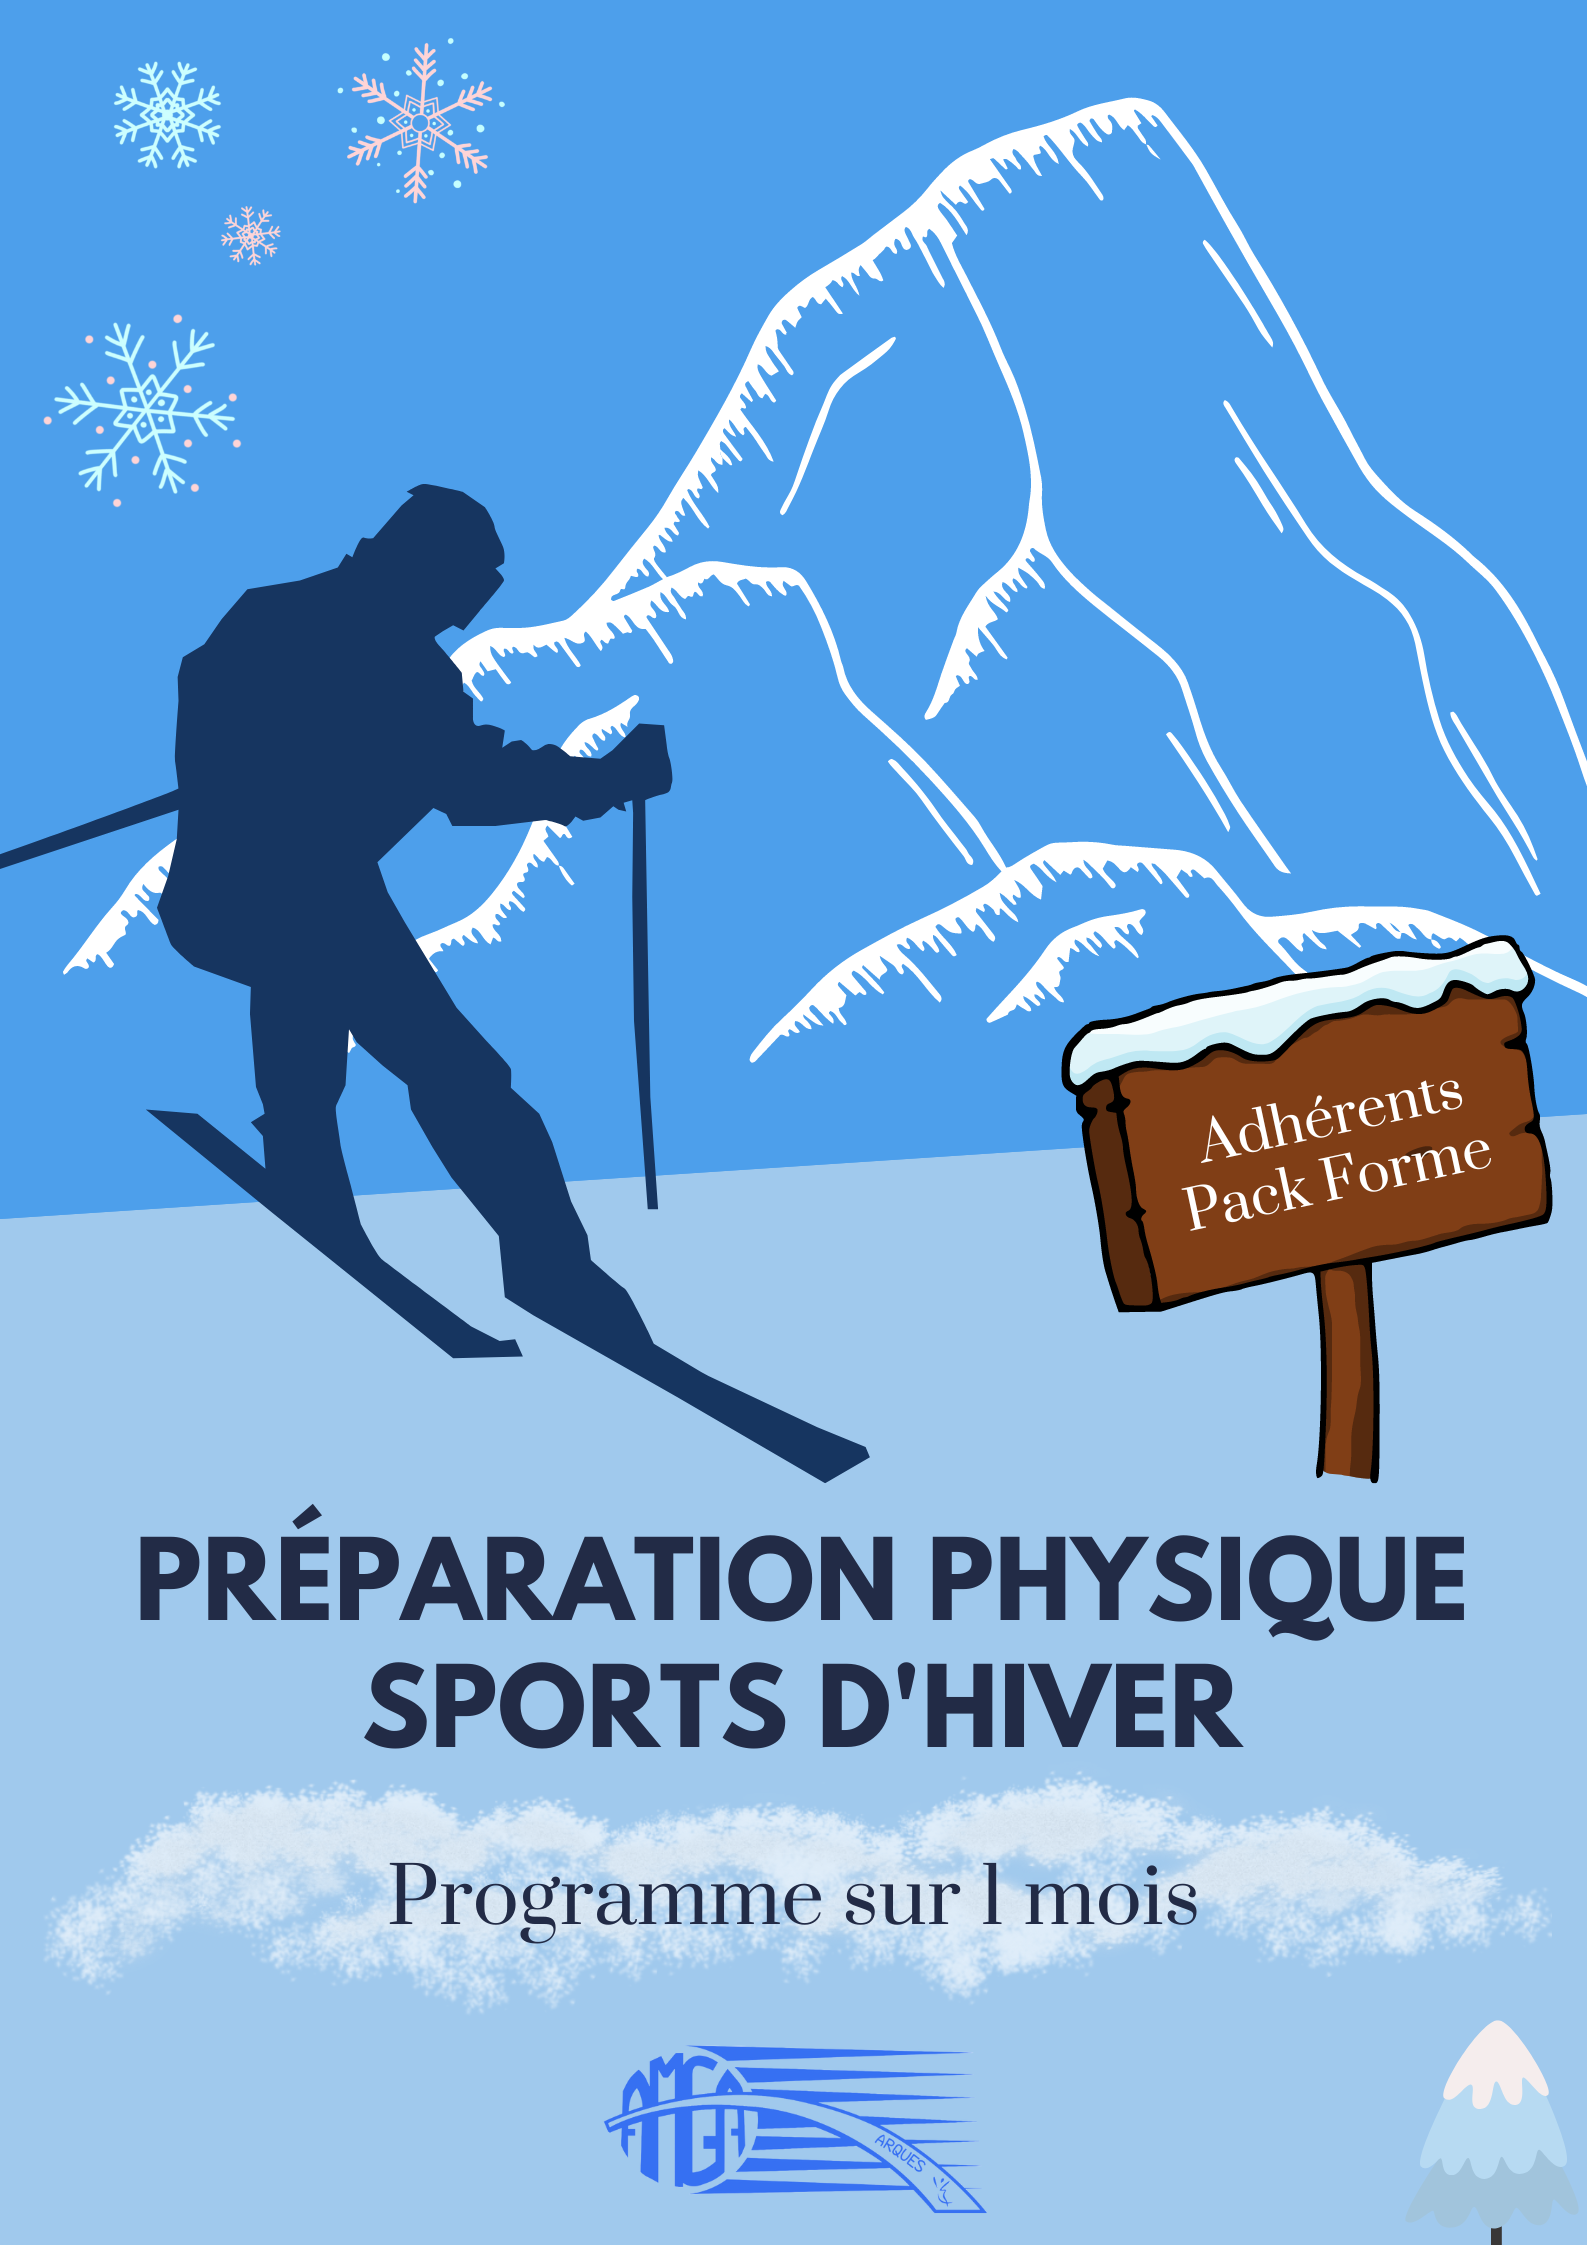 Préparation physique sports d'hiver ⛷